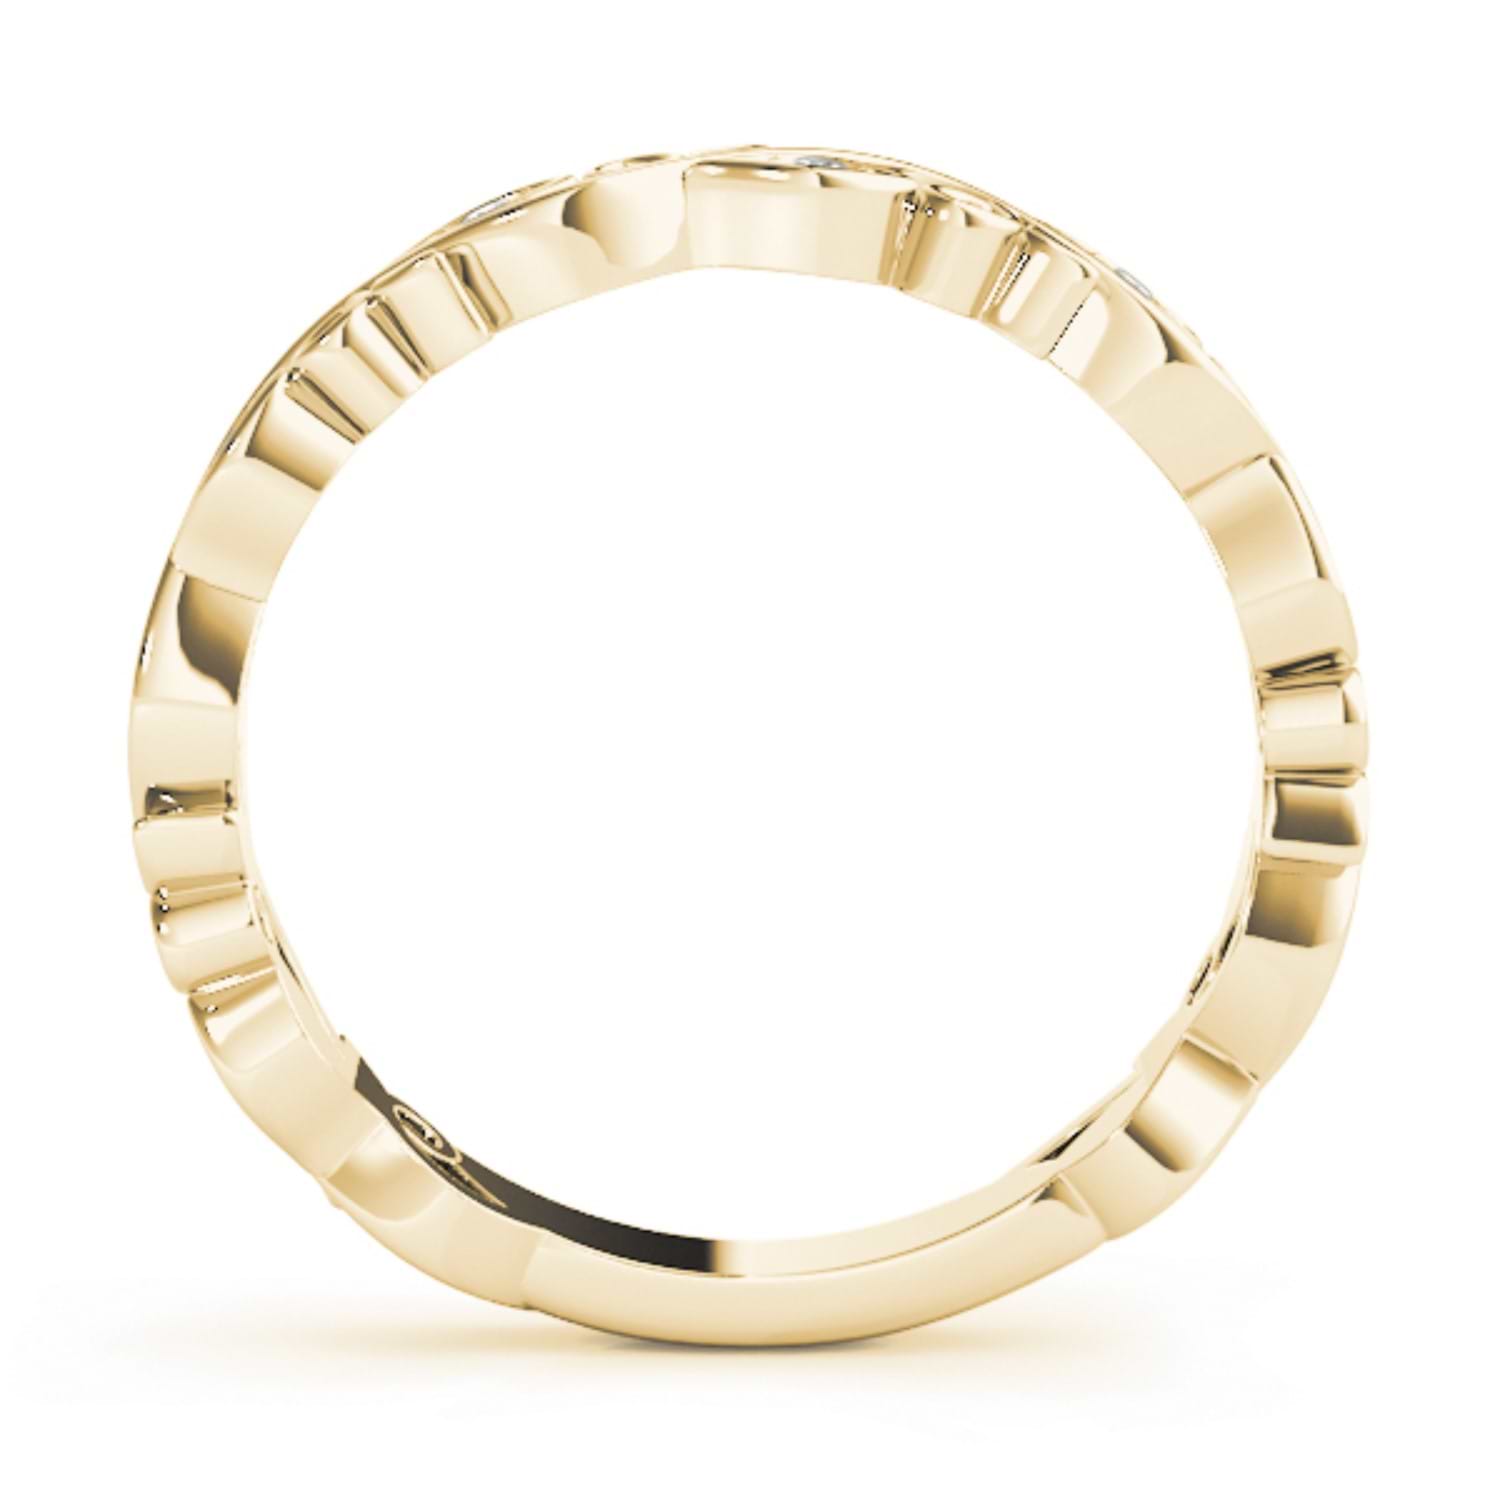 Amethyst Leaf Fashion Ring Wedding Band 14k Yellow Gold (0.05ct)